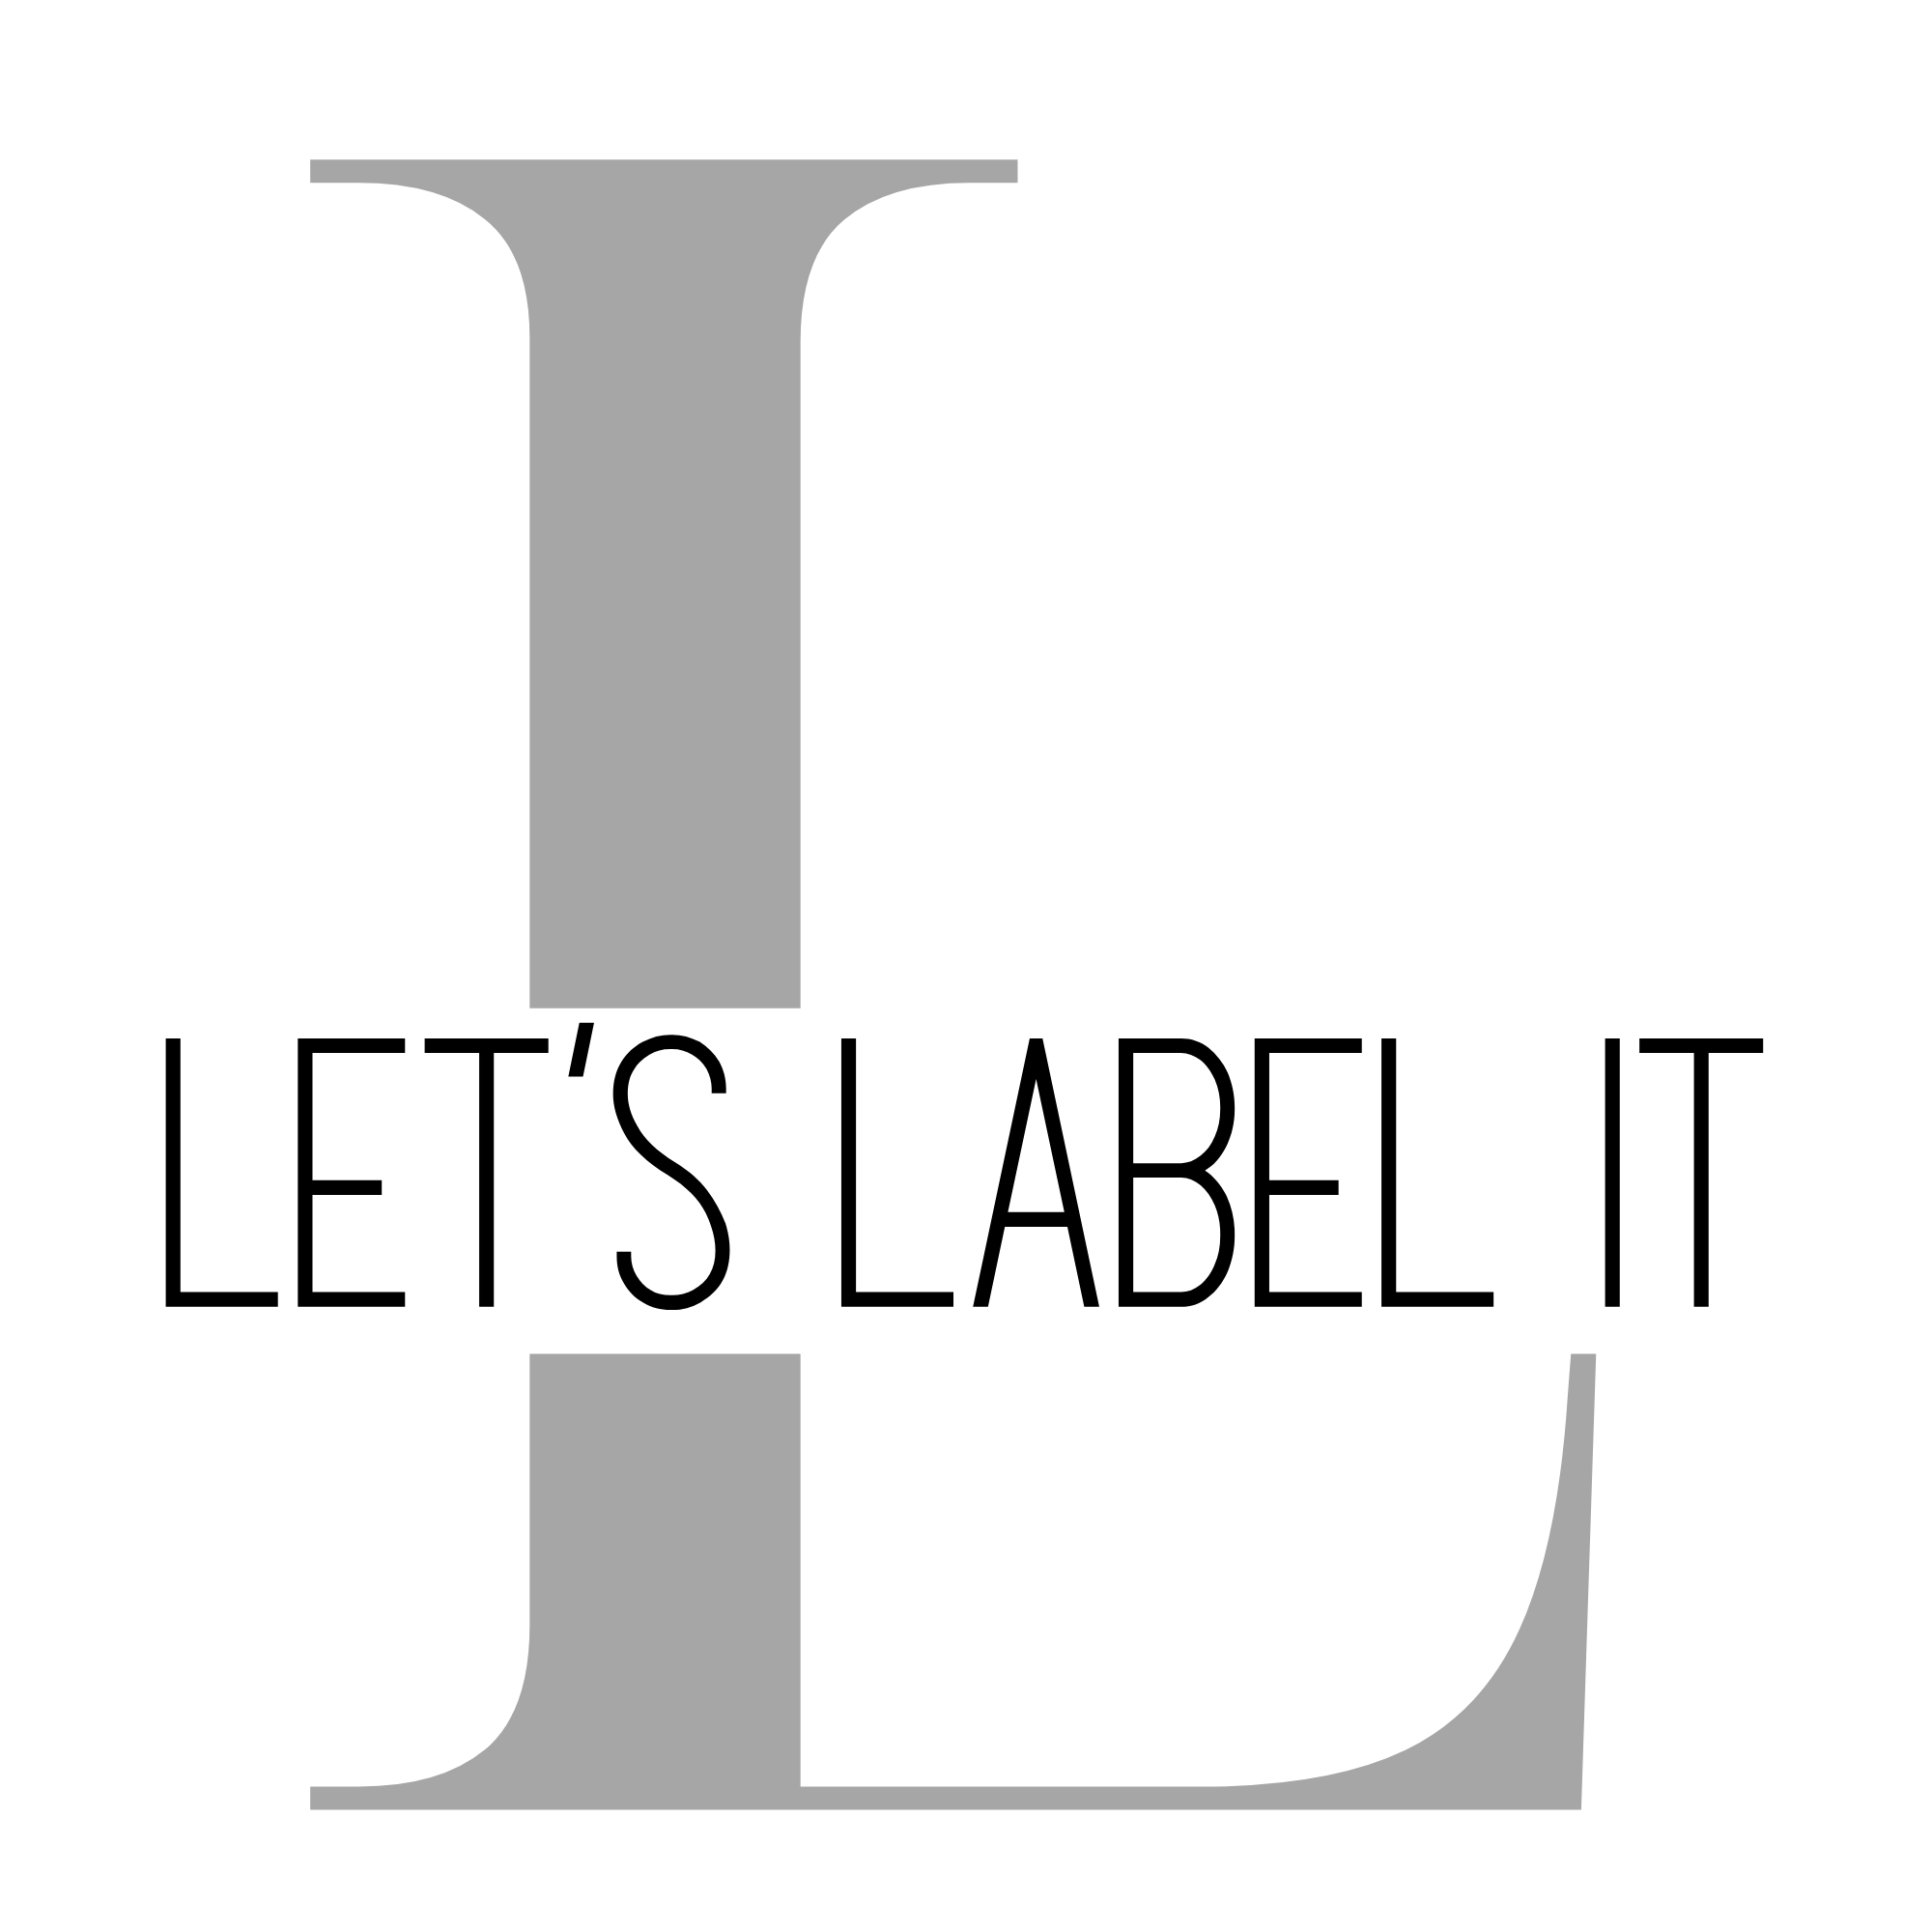 Let's Label It